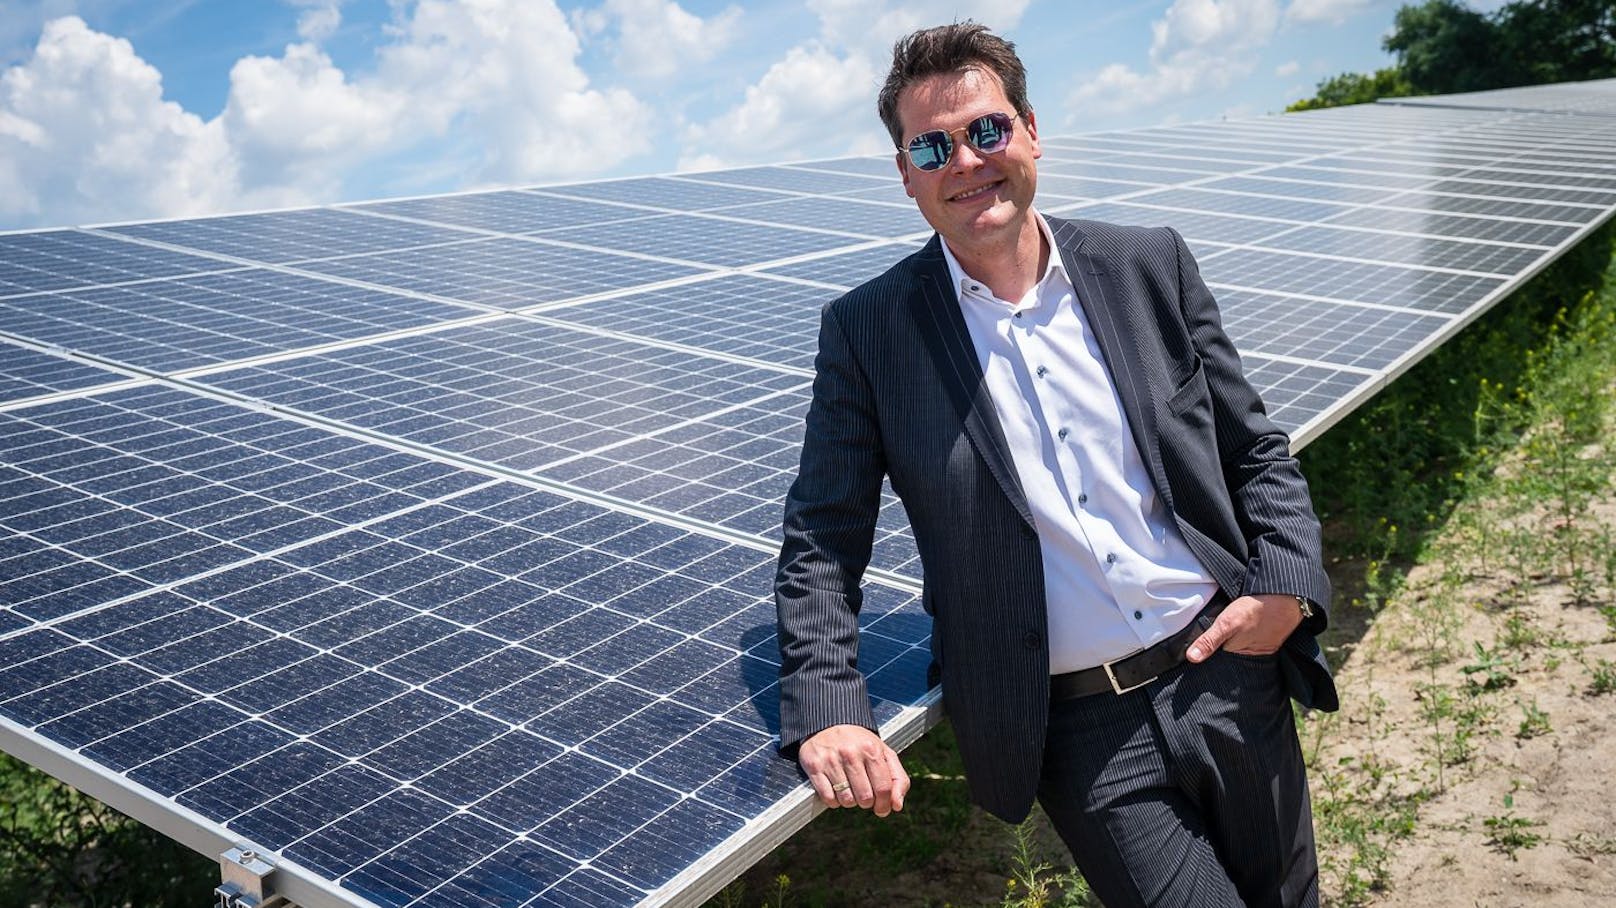 Klimastadtrat Jürgen Czernohorsky (SPÖ) stellt die neue Photovoltaik-Förderung vor.